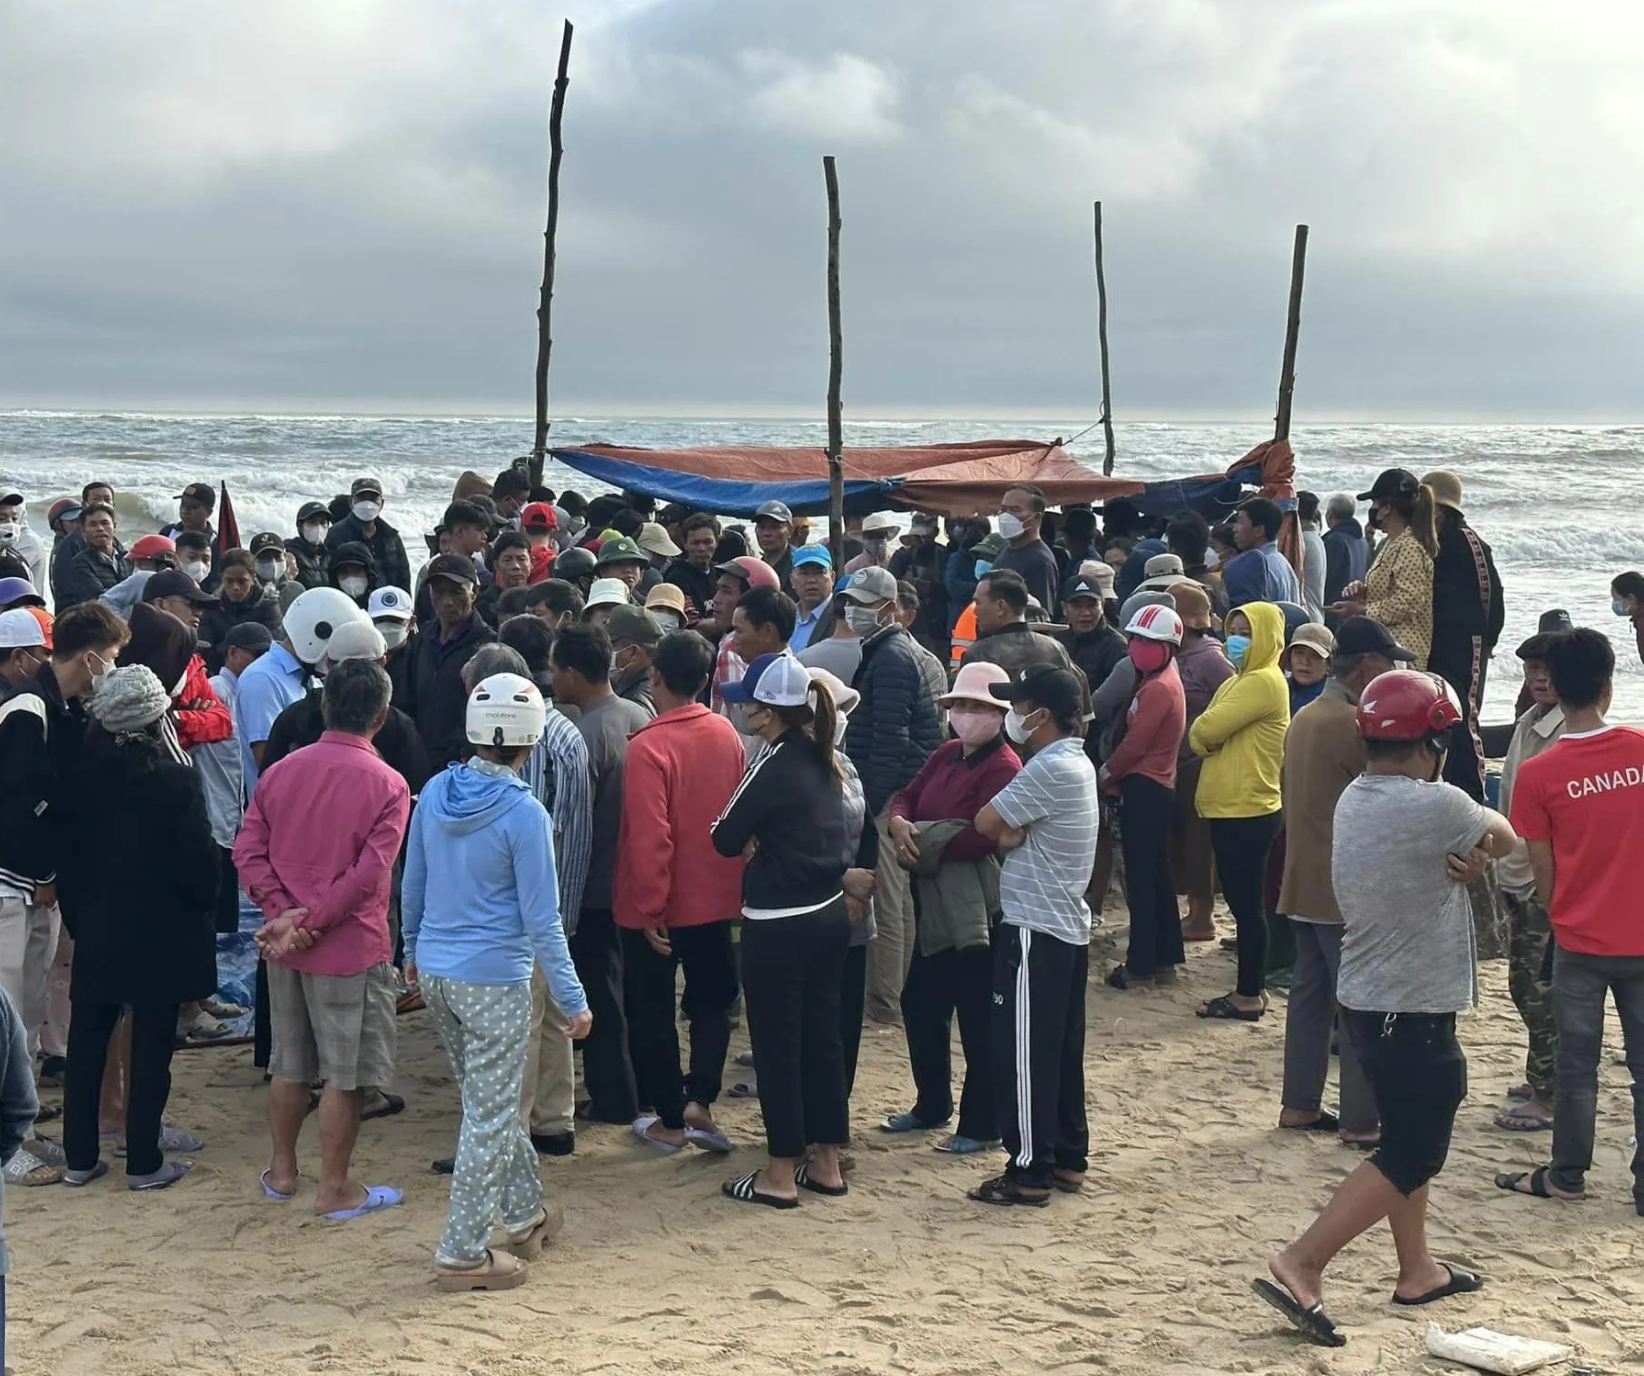 Thi thể nạn nhân đã được tìm thấy và bàn giao cho gia đình sau những nỗ lực giúp đỡ của người dân xã Hải Dương